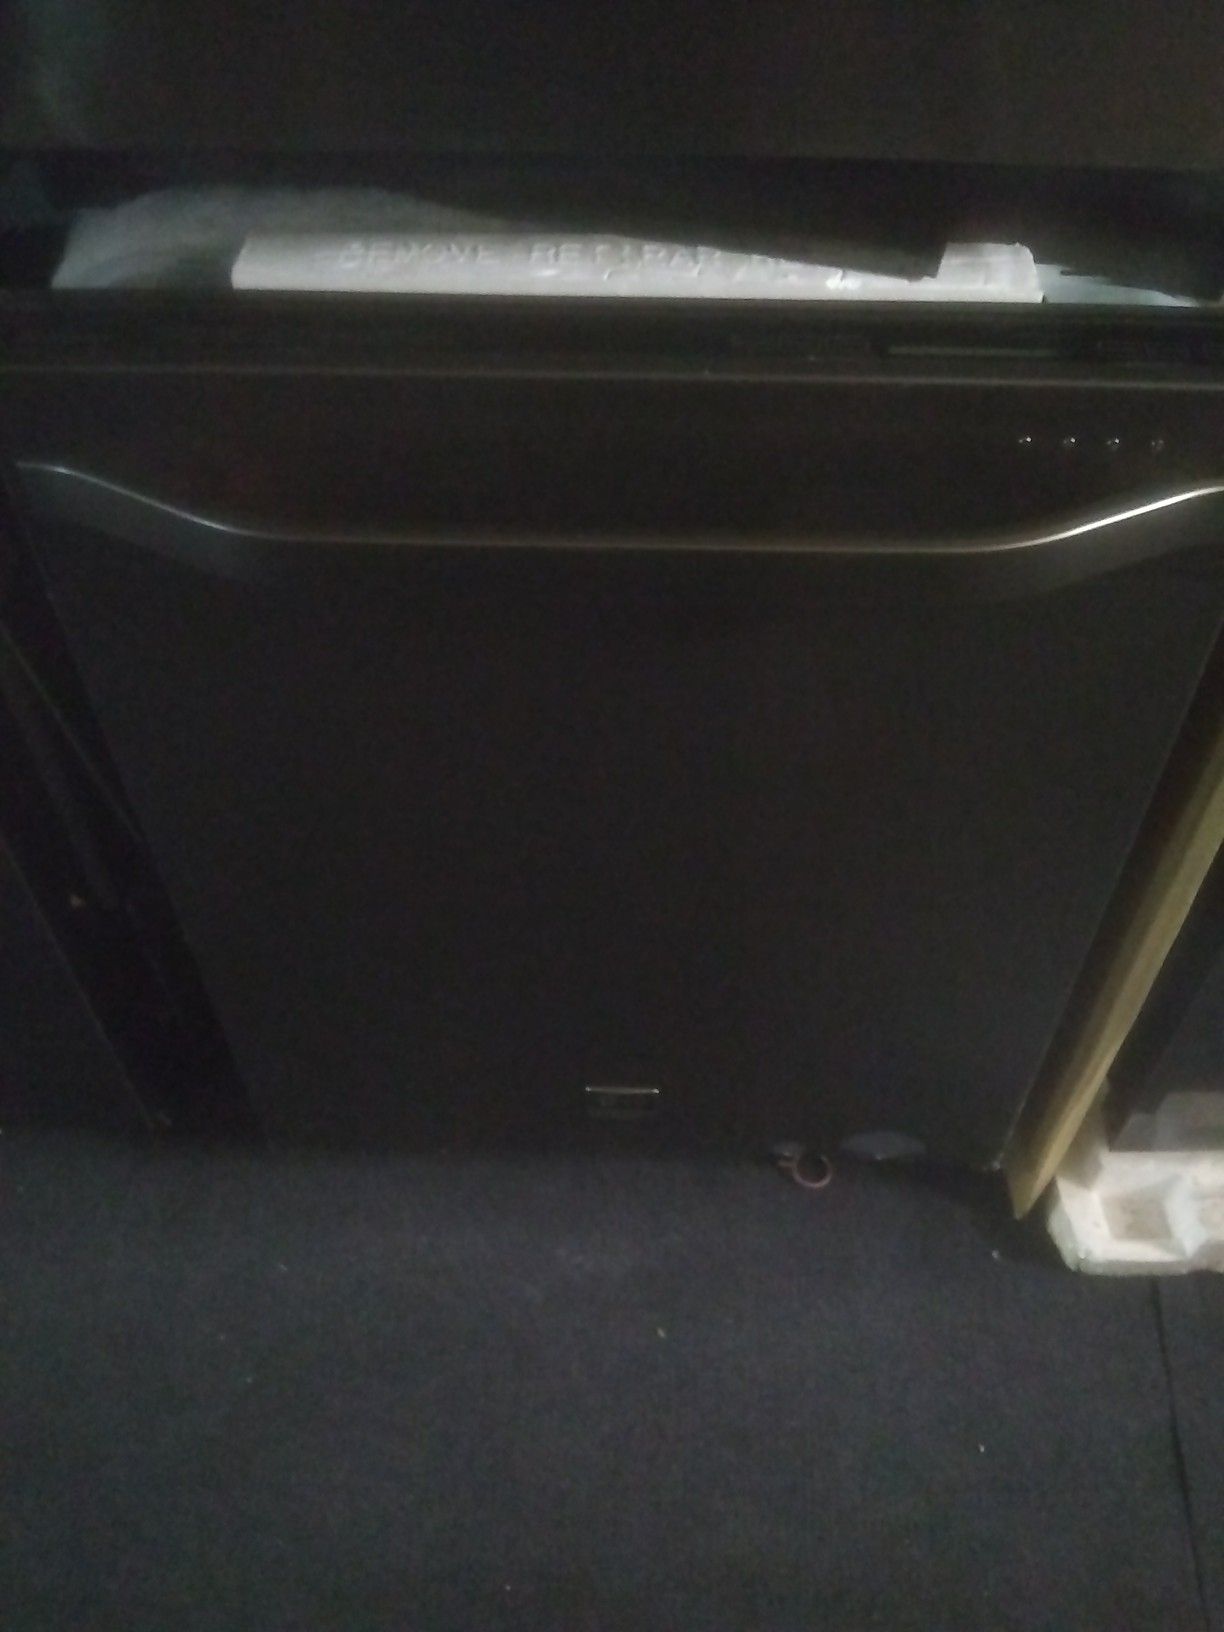 Lg stainless steel kitchen appliance dishwasher